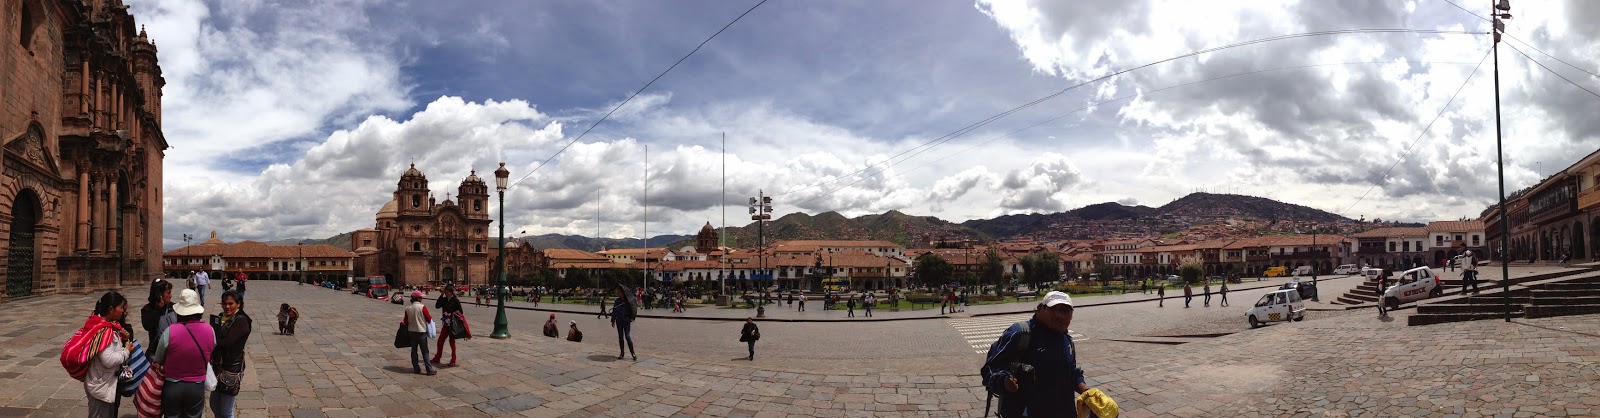 City Tour por Cusco: da Plaza de Armas à Tambomachay